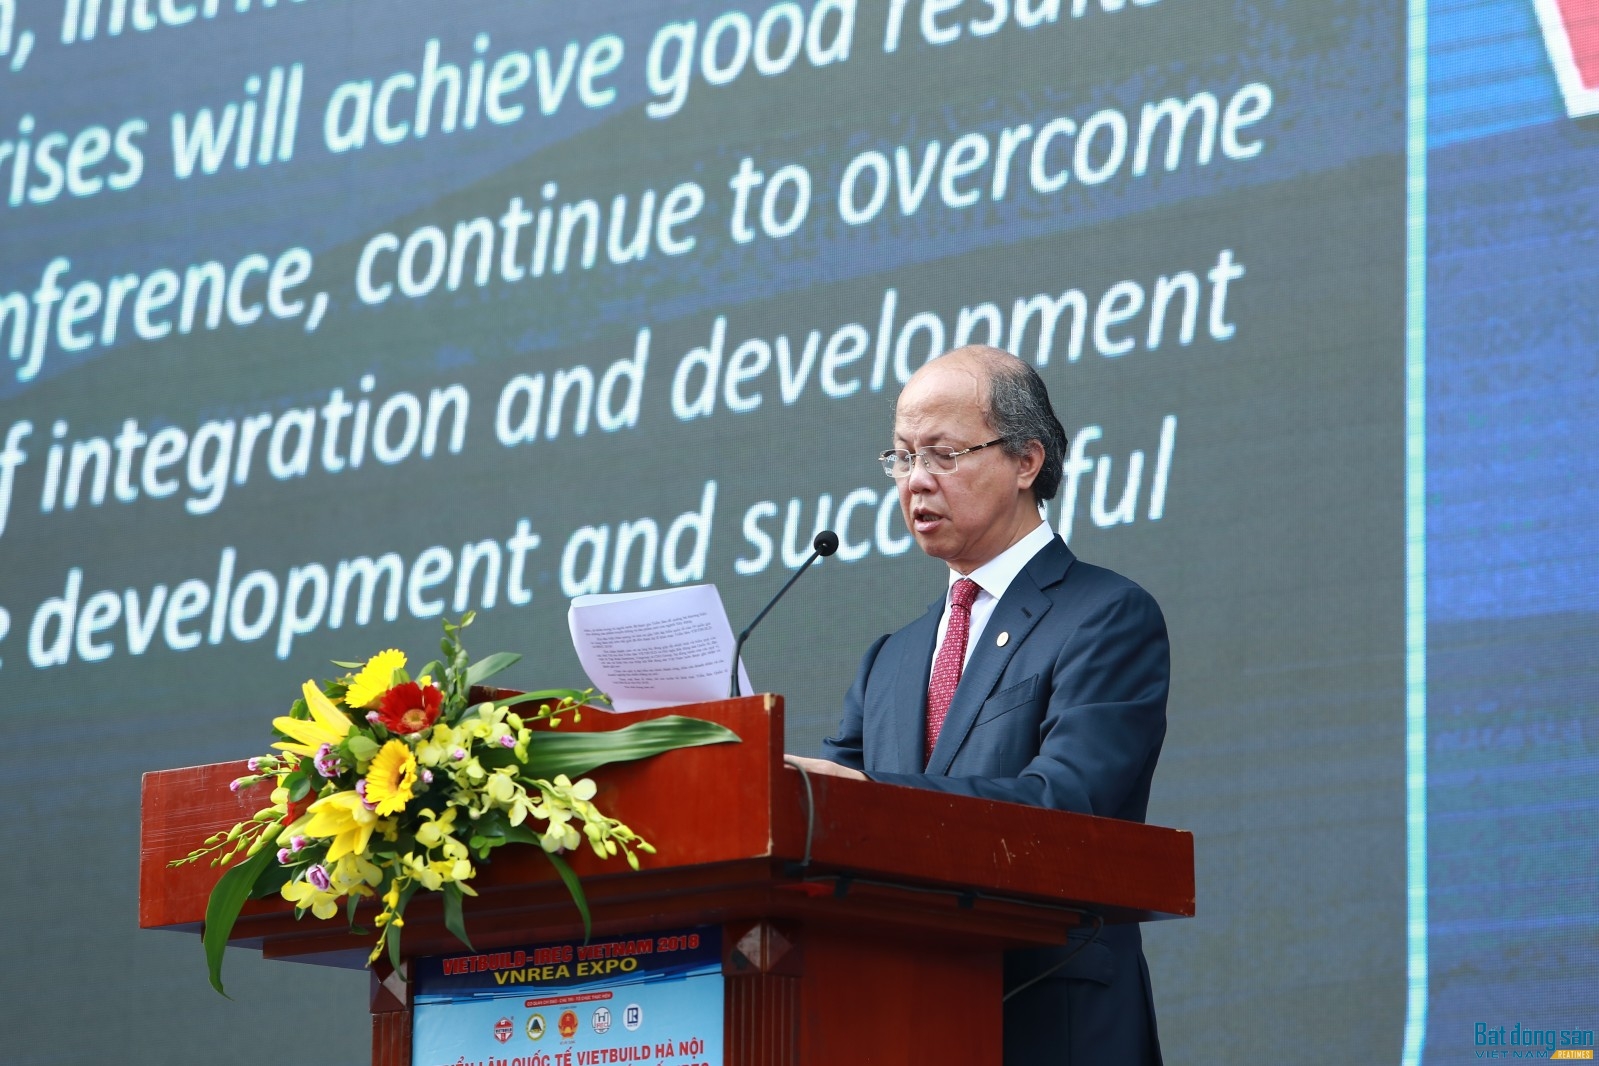 Ông Nguyễn Trần Nam, nguyên Thứ trưởng Bộ Xây dựng, Chủ tịch hiệp hội Bất động sản Việt Nam